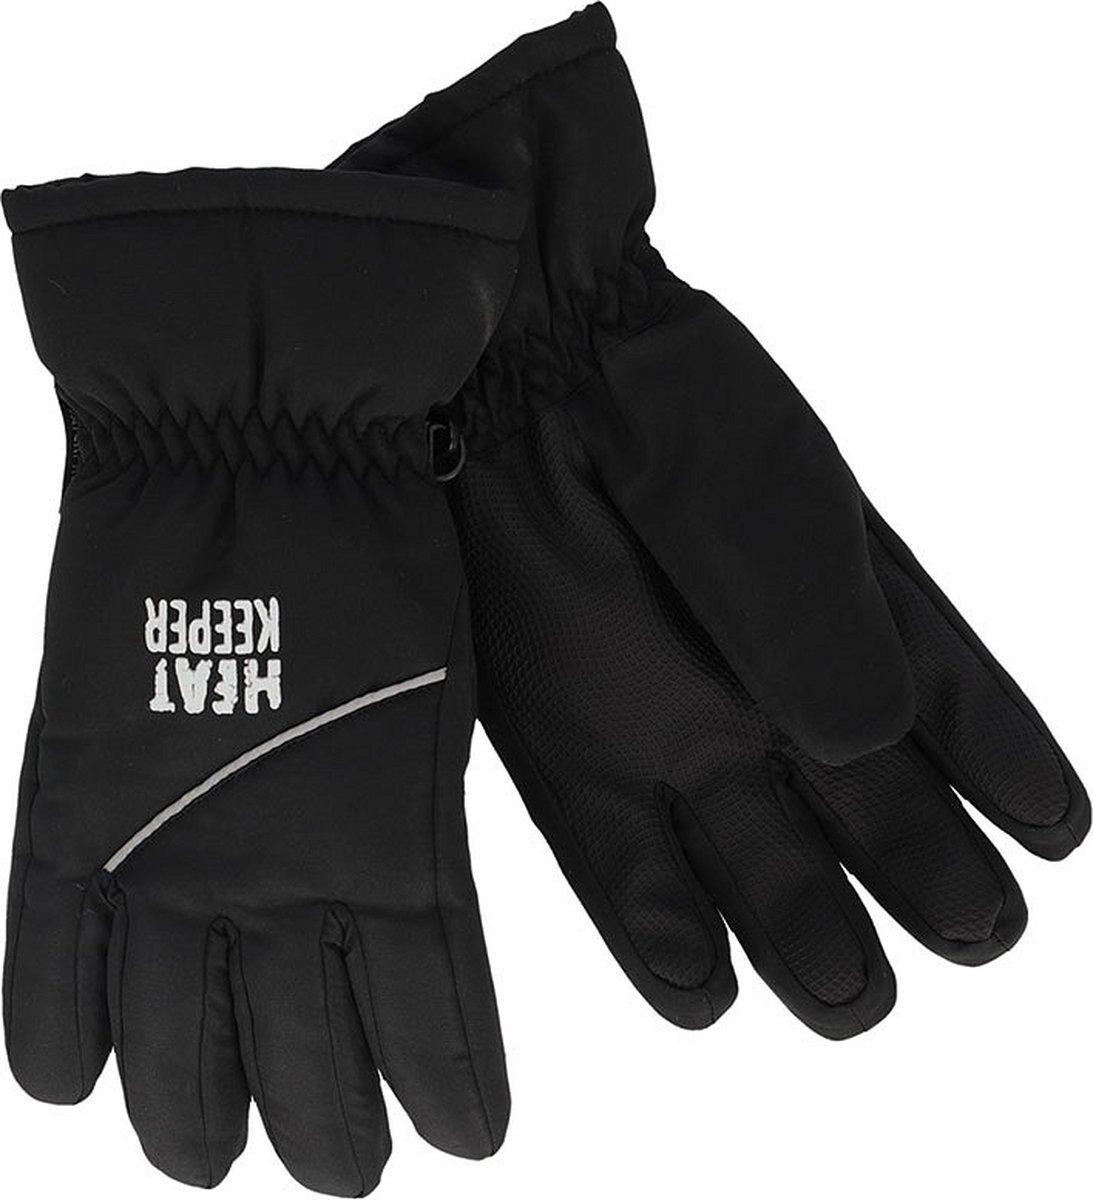 Heatkeeper Kinder Ski Handschoenen Zwart